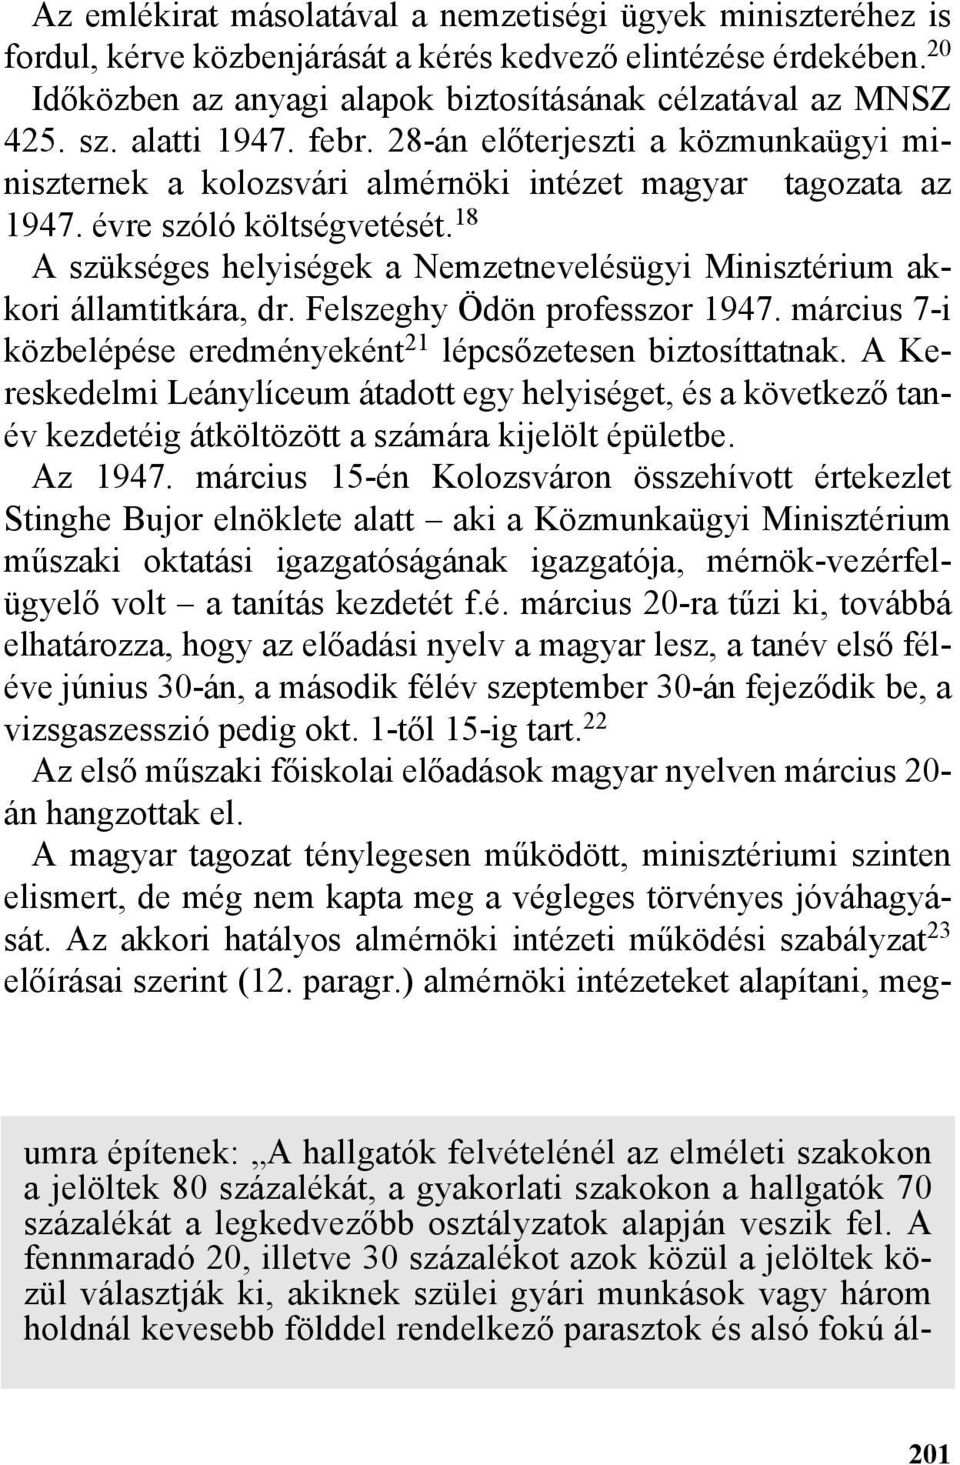 18 A szükséges helyiségek a Nemzetnevelésügyi Minisztérium akkori államtitkára, dr. Felszeghy Ödön professzor 1947. március 7-i közbelépése eredményeként 21 lépcsõzetesen biztosíttatnak.